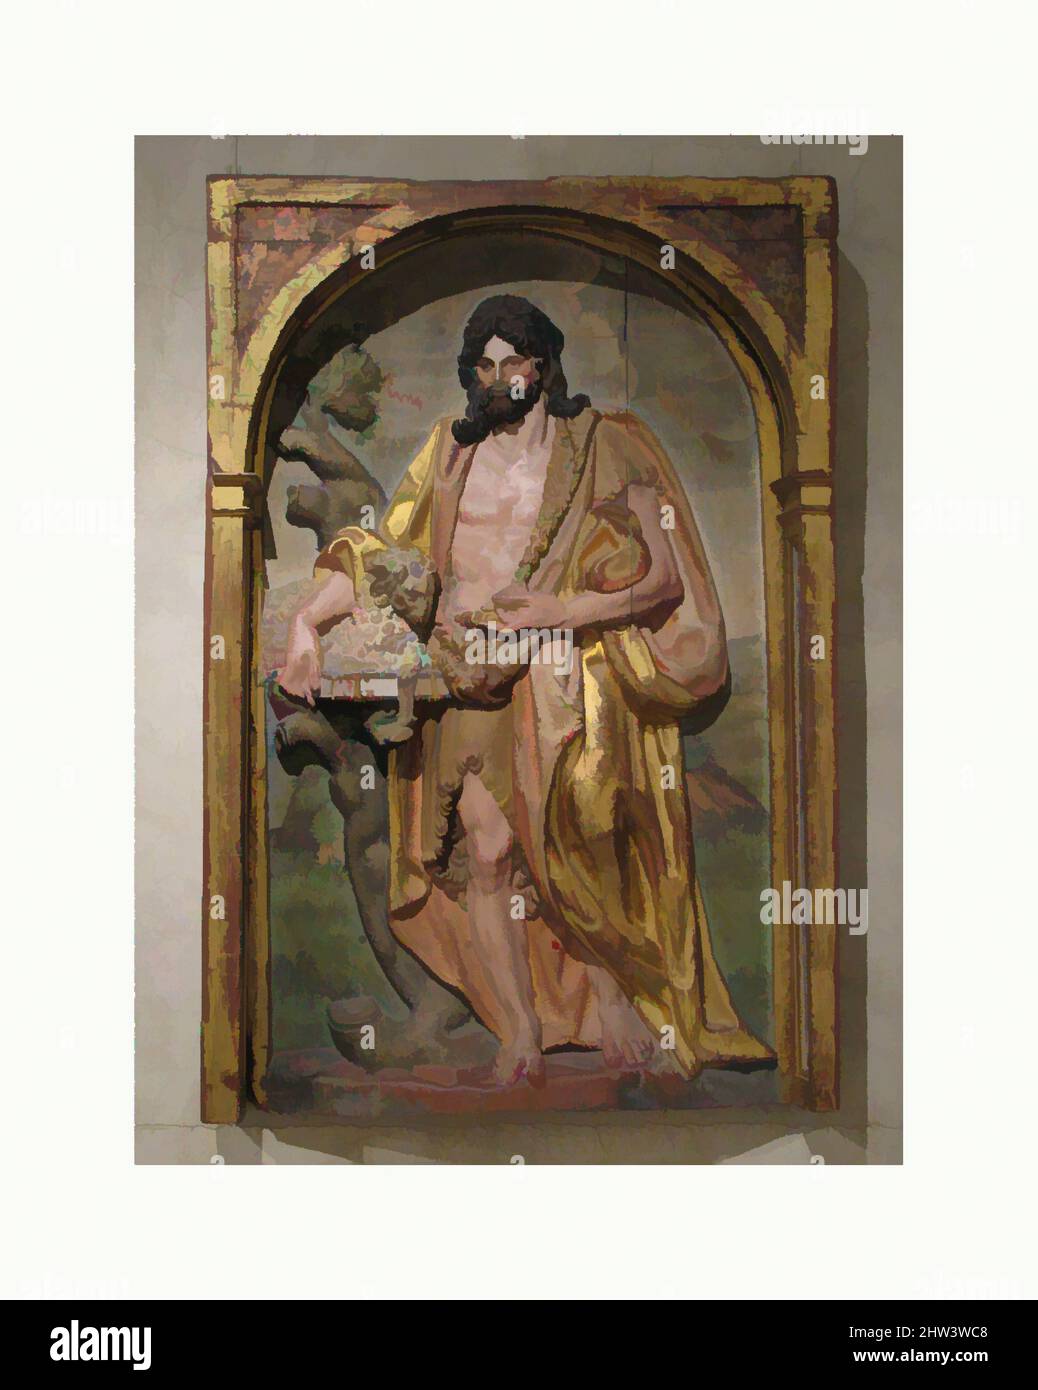 Kunst inspiriert von Johannes dem Täufer, ca. 1580–92, Spanisch, Navarra, Holz, polychromiert und vergoldet, 44-1/4 x 29-5/8 x 5-1/4 Zoll (112,4 x 75,2 x 13,3 cm), Skulptur, Juan de Ancheta (spanisch, ca. 1540–1592), Obwohl klassische, heroische Elemente von Michelangelos Figurenfigur integriert wurden, modernisierte Classic Works von Artotop mit einem Schuss Modernität. Formen, Farbe und Wert, auffällige visuelle Wirkung auf Kunst. Emotionen durch Freiheit von Kunstwerken auf zeitgemäße Weise. Eine zeitlose Botschaft, die eine wild kreative neue Richtung verfolgt. Künstler, die sich dem digitalen Medium zuwenden und die Artotop NFT erschaffen Stockfoto